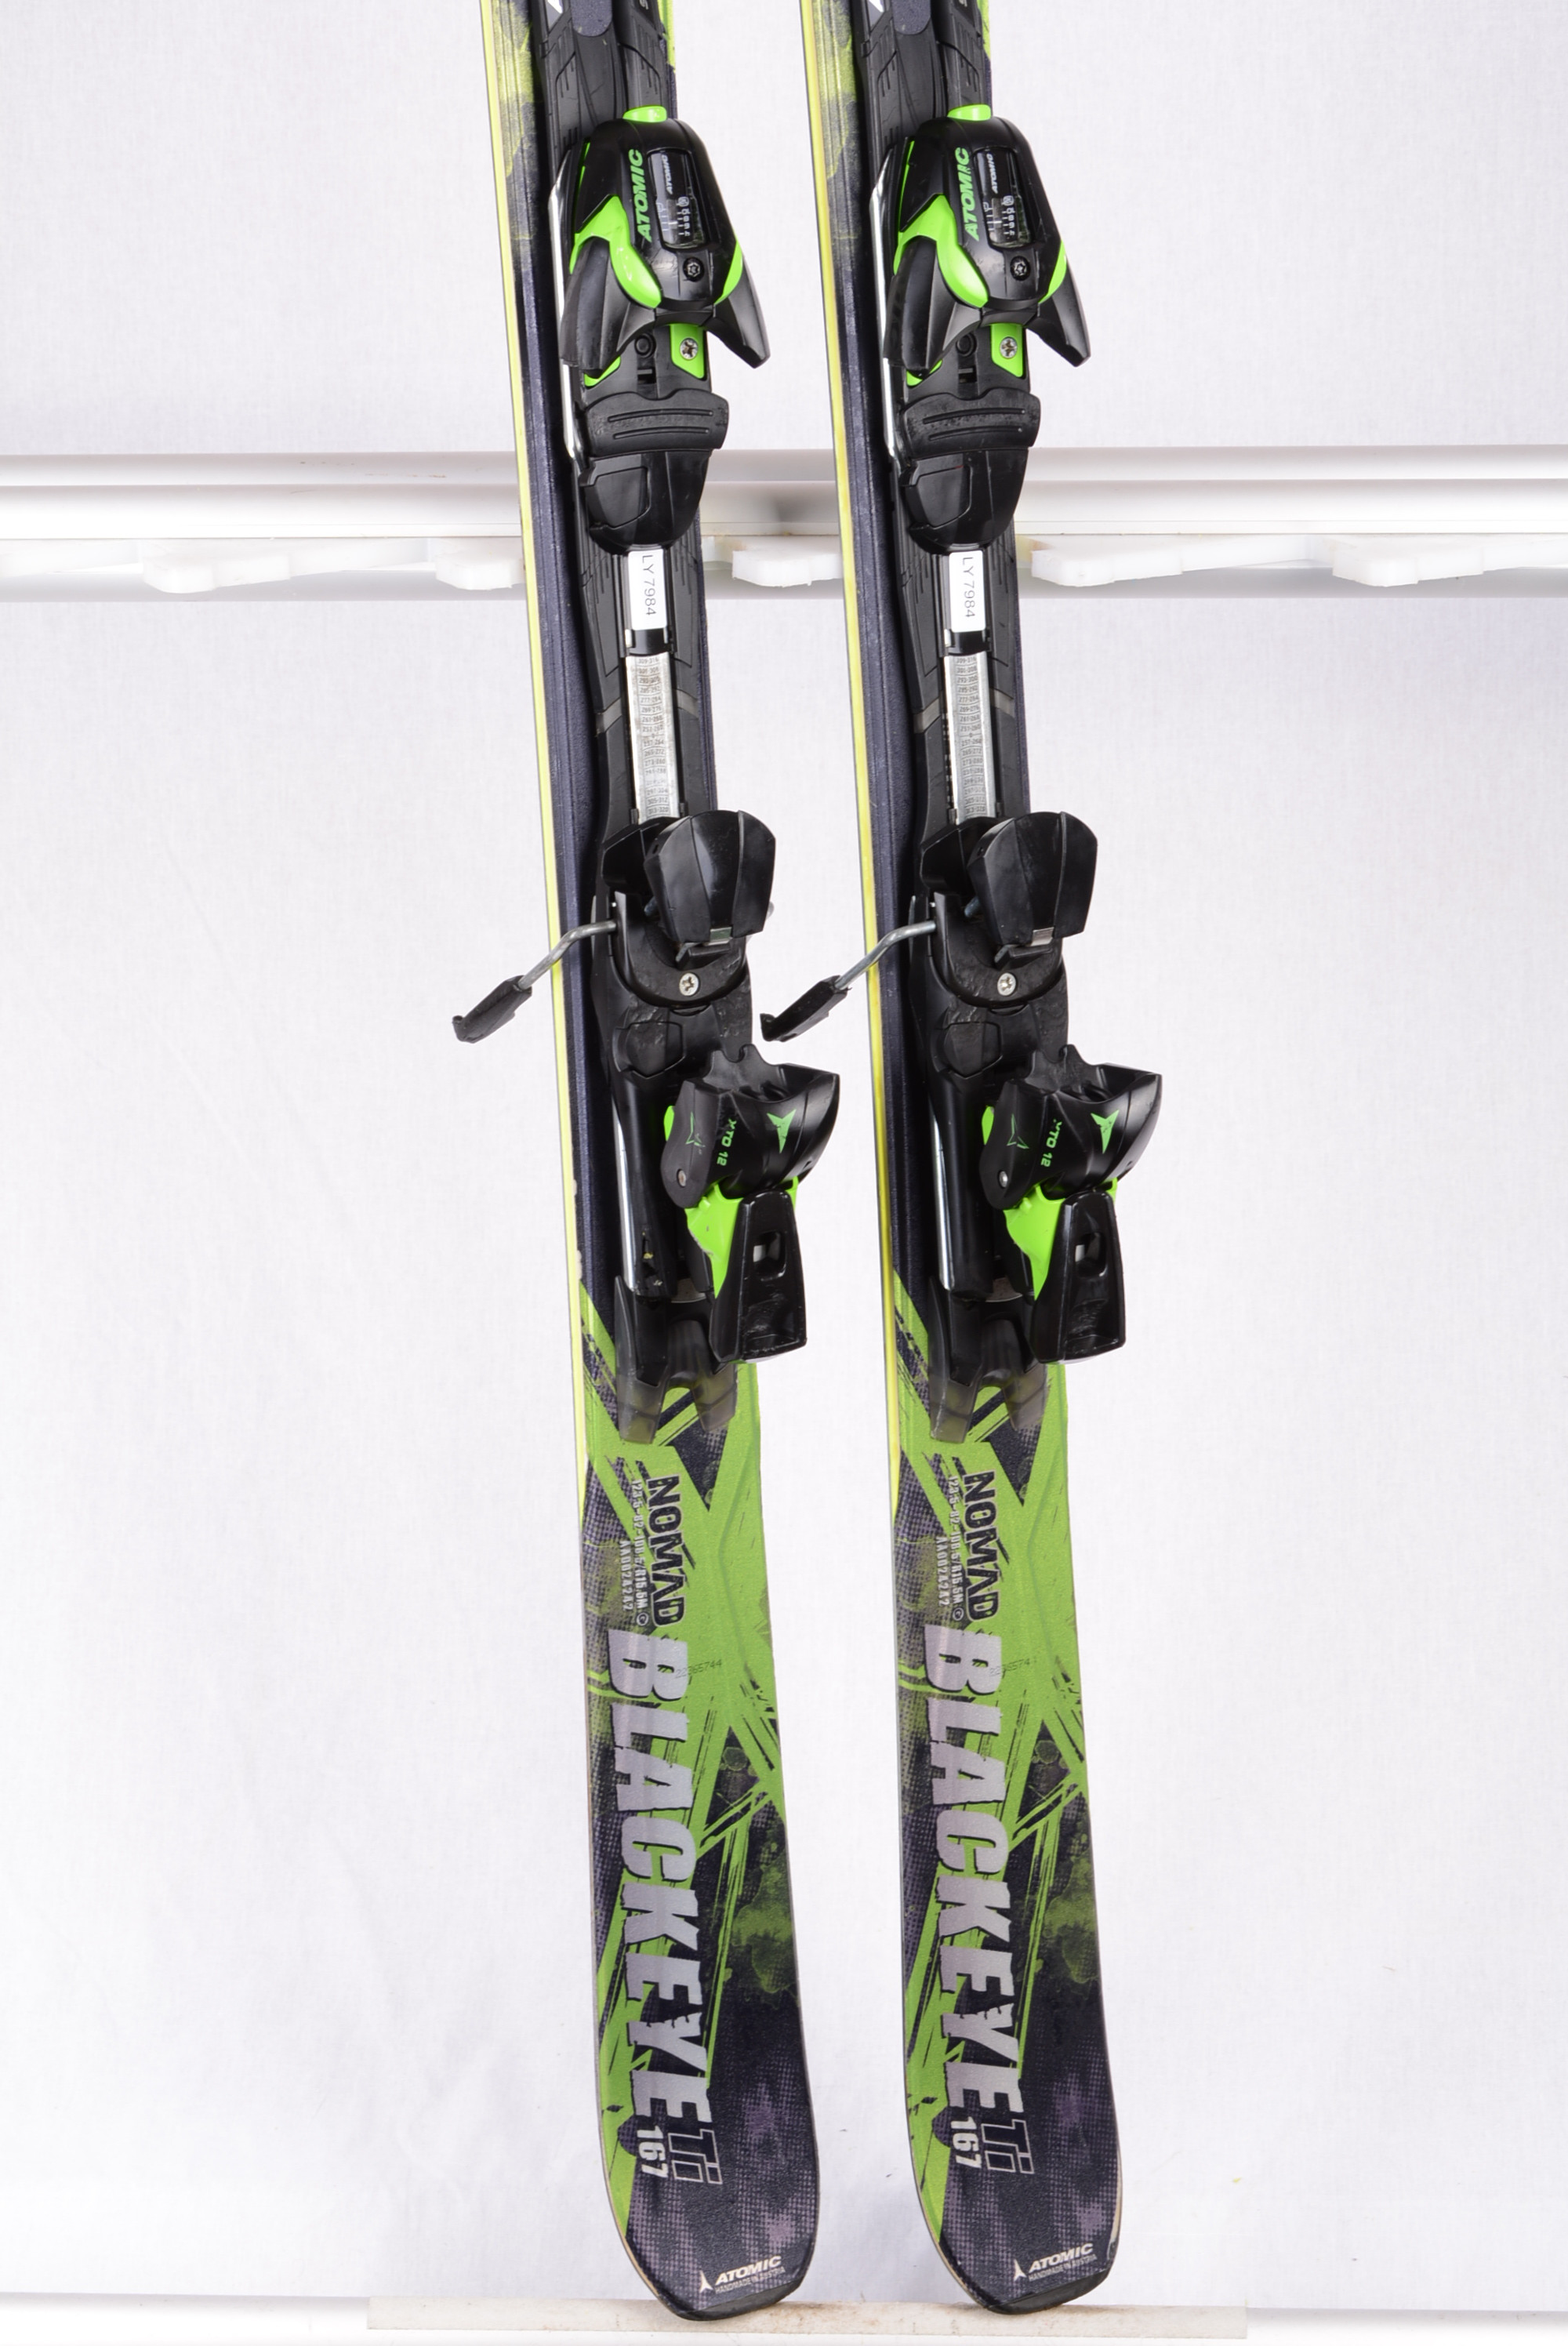 ski's ATOMIC NOMAD BLACKEYE ALL MOUNTAIN, adaptive black/green + Atomic XTO 12 - Mardosport.nl